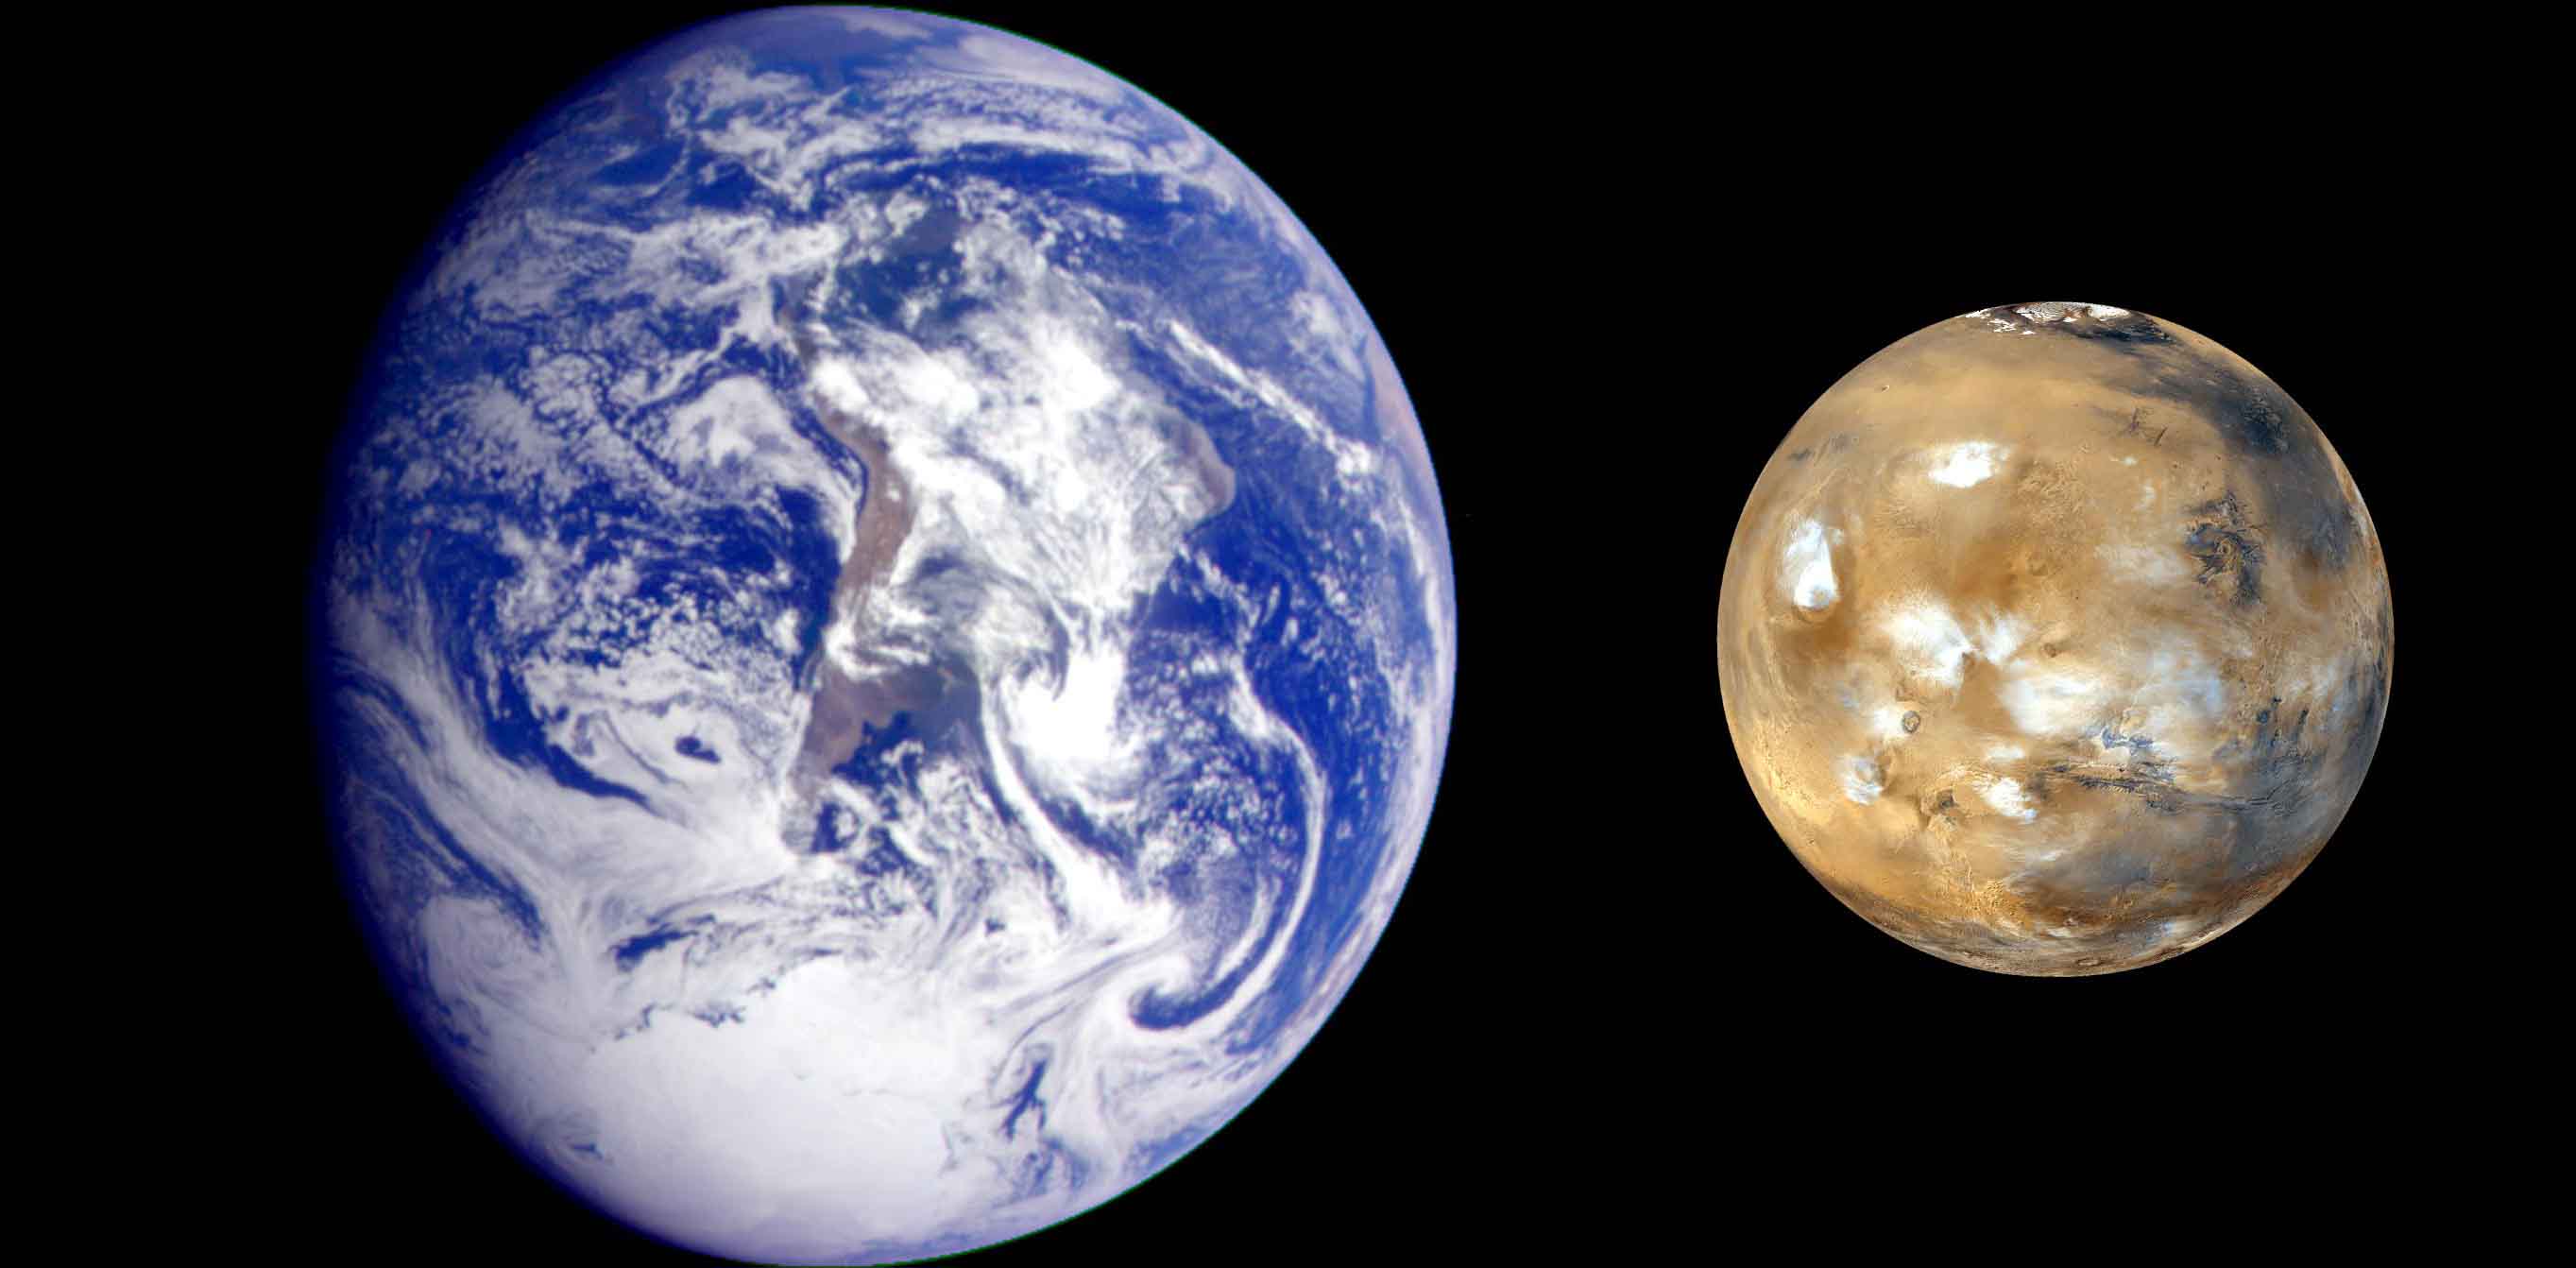 Earth and Mars. Photo: Ignacio Benvenuty Cabral